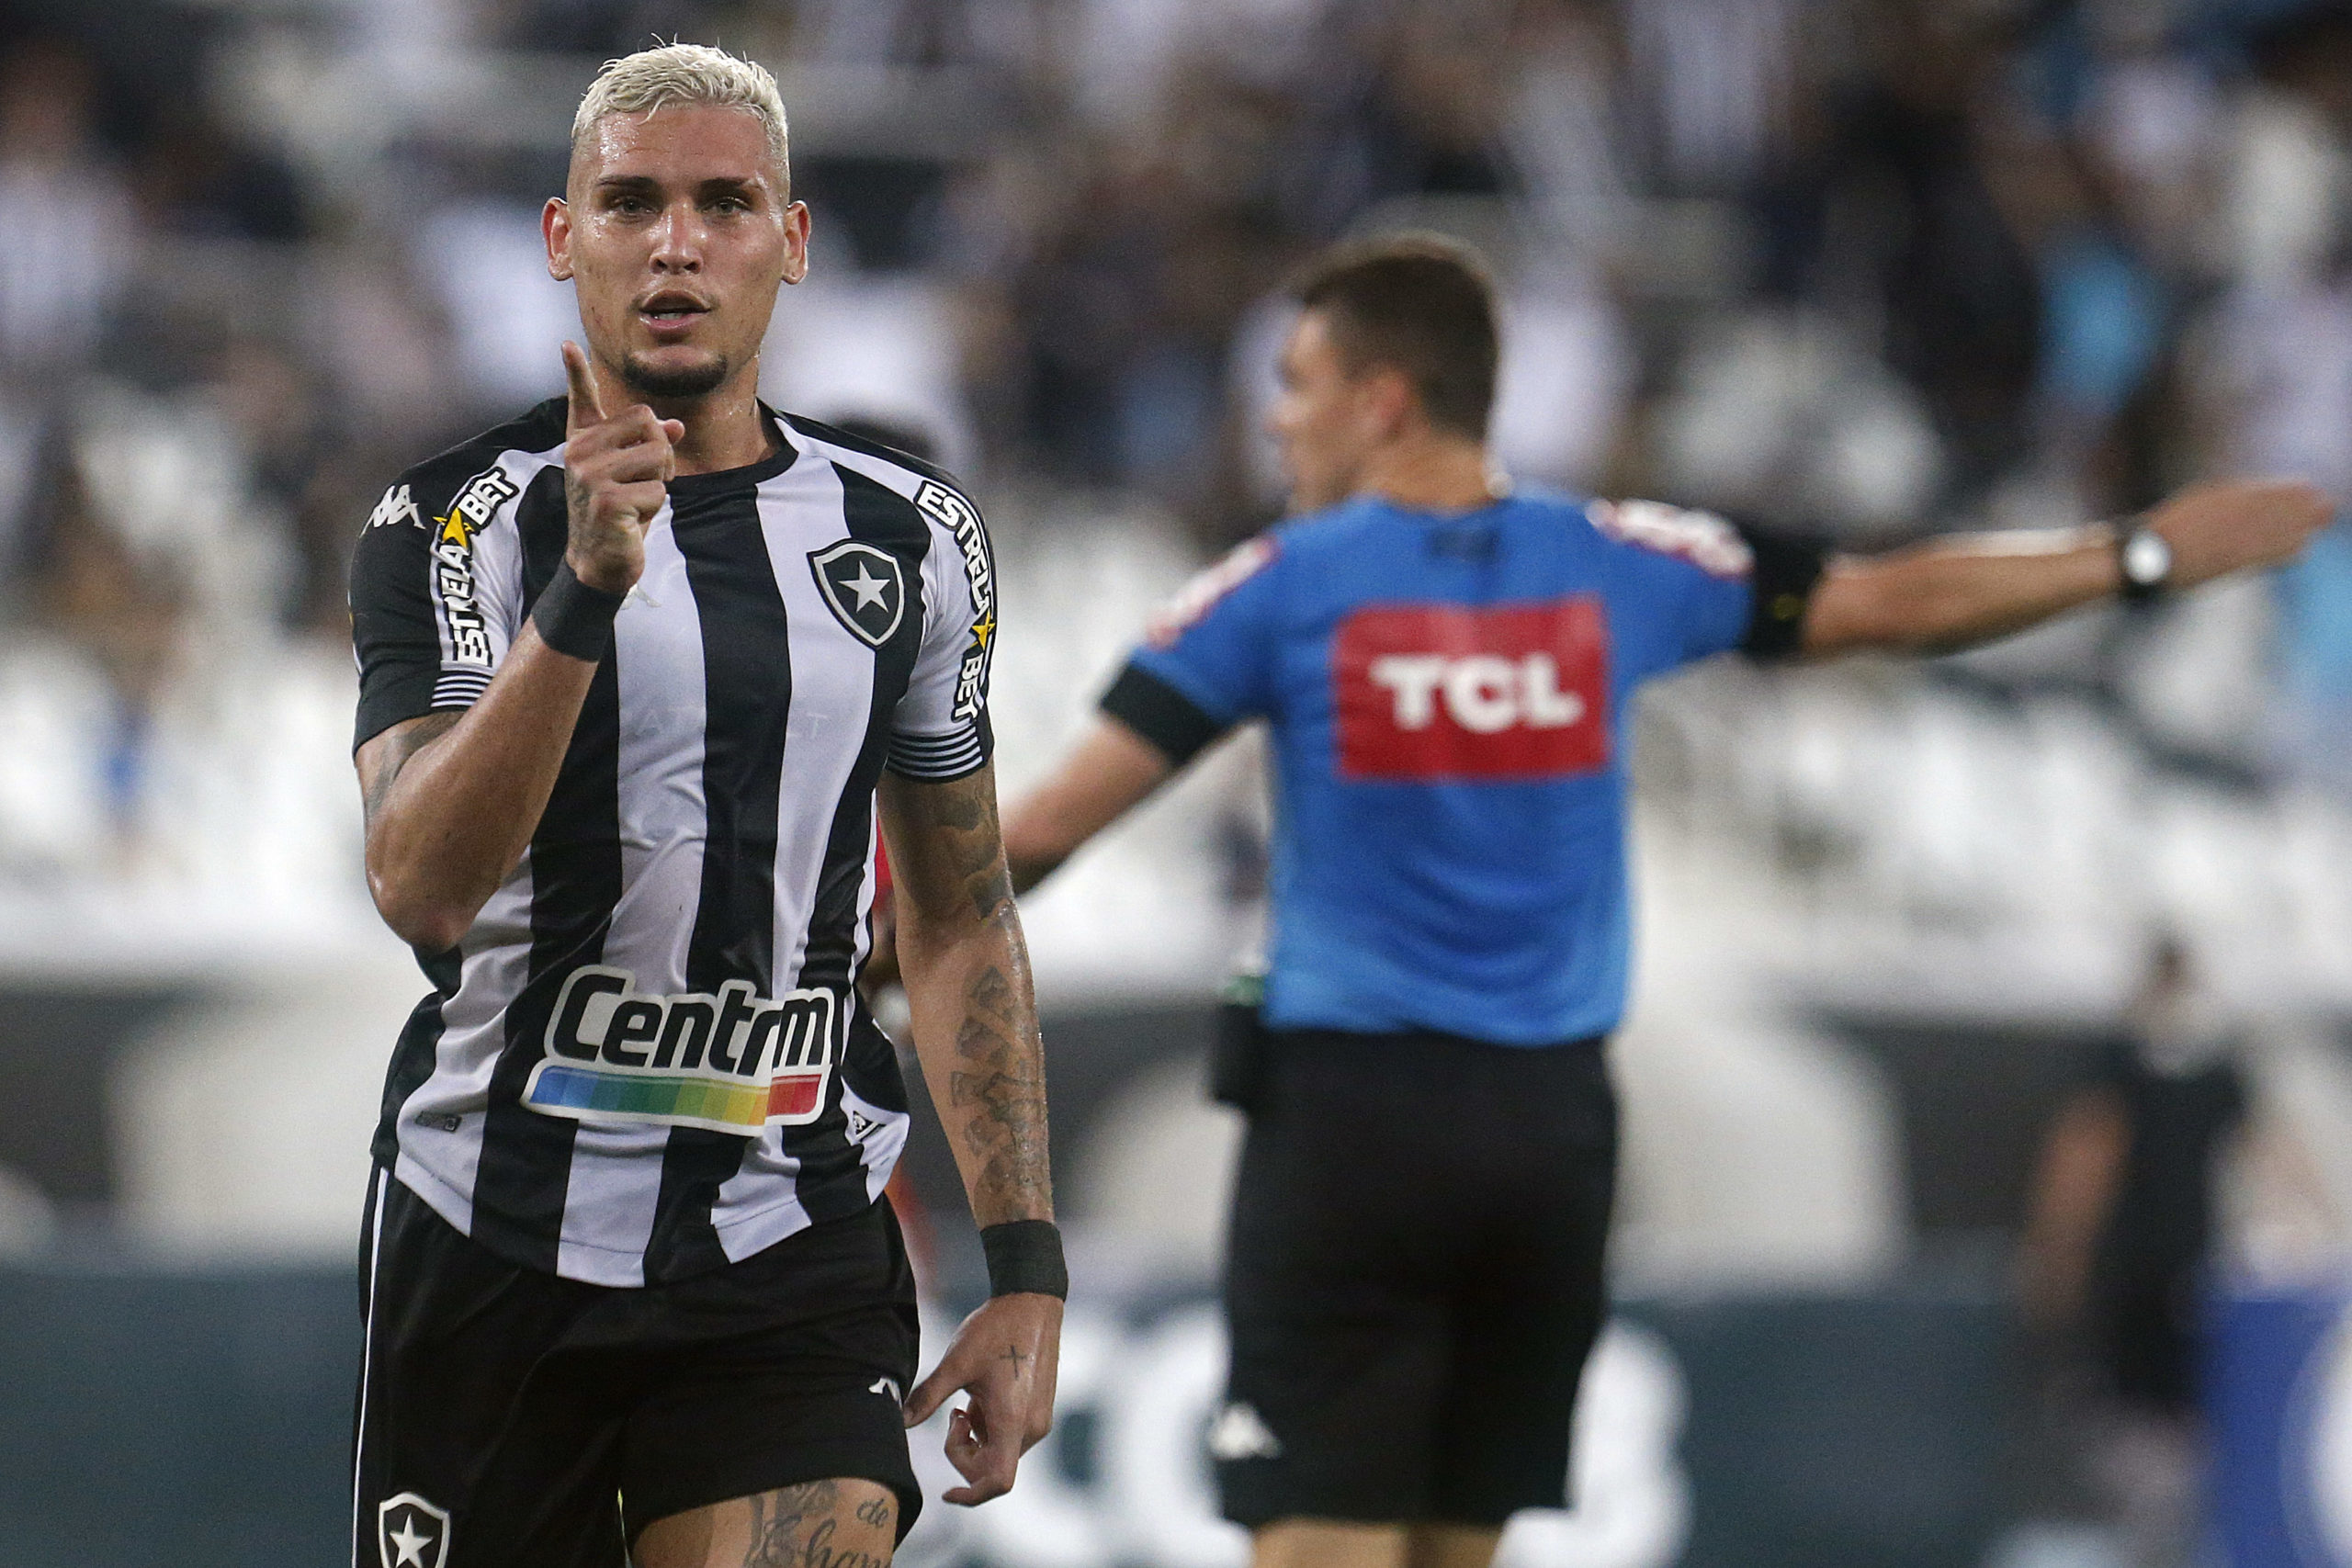 Botafogo vence o Sampaio Corrêa por 2 a 0 e assume vice-liderança da Série B